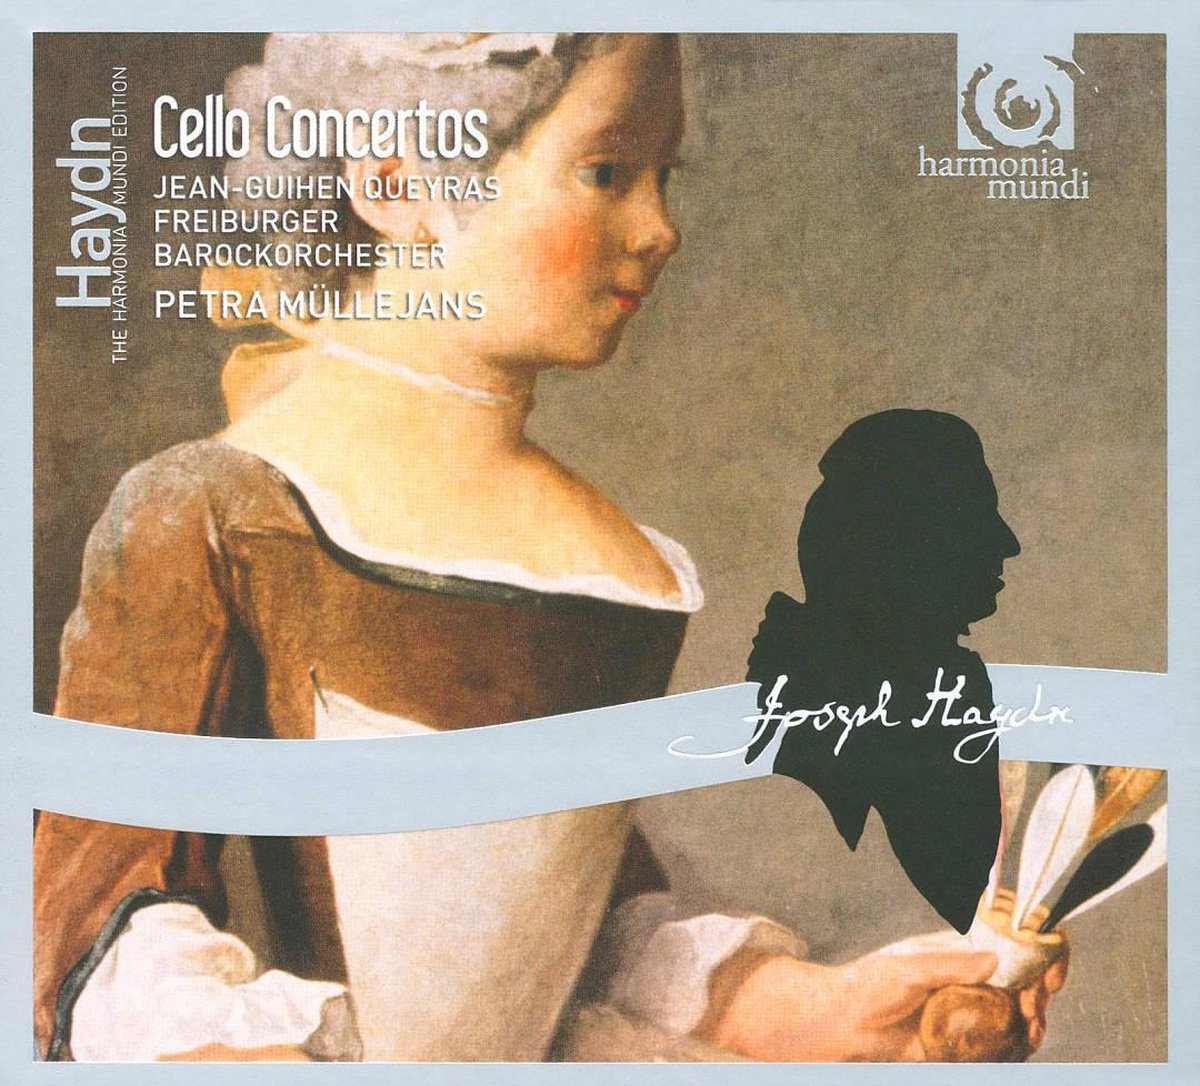 Cello Concertos - Jean-Guihen Queyras